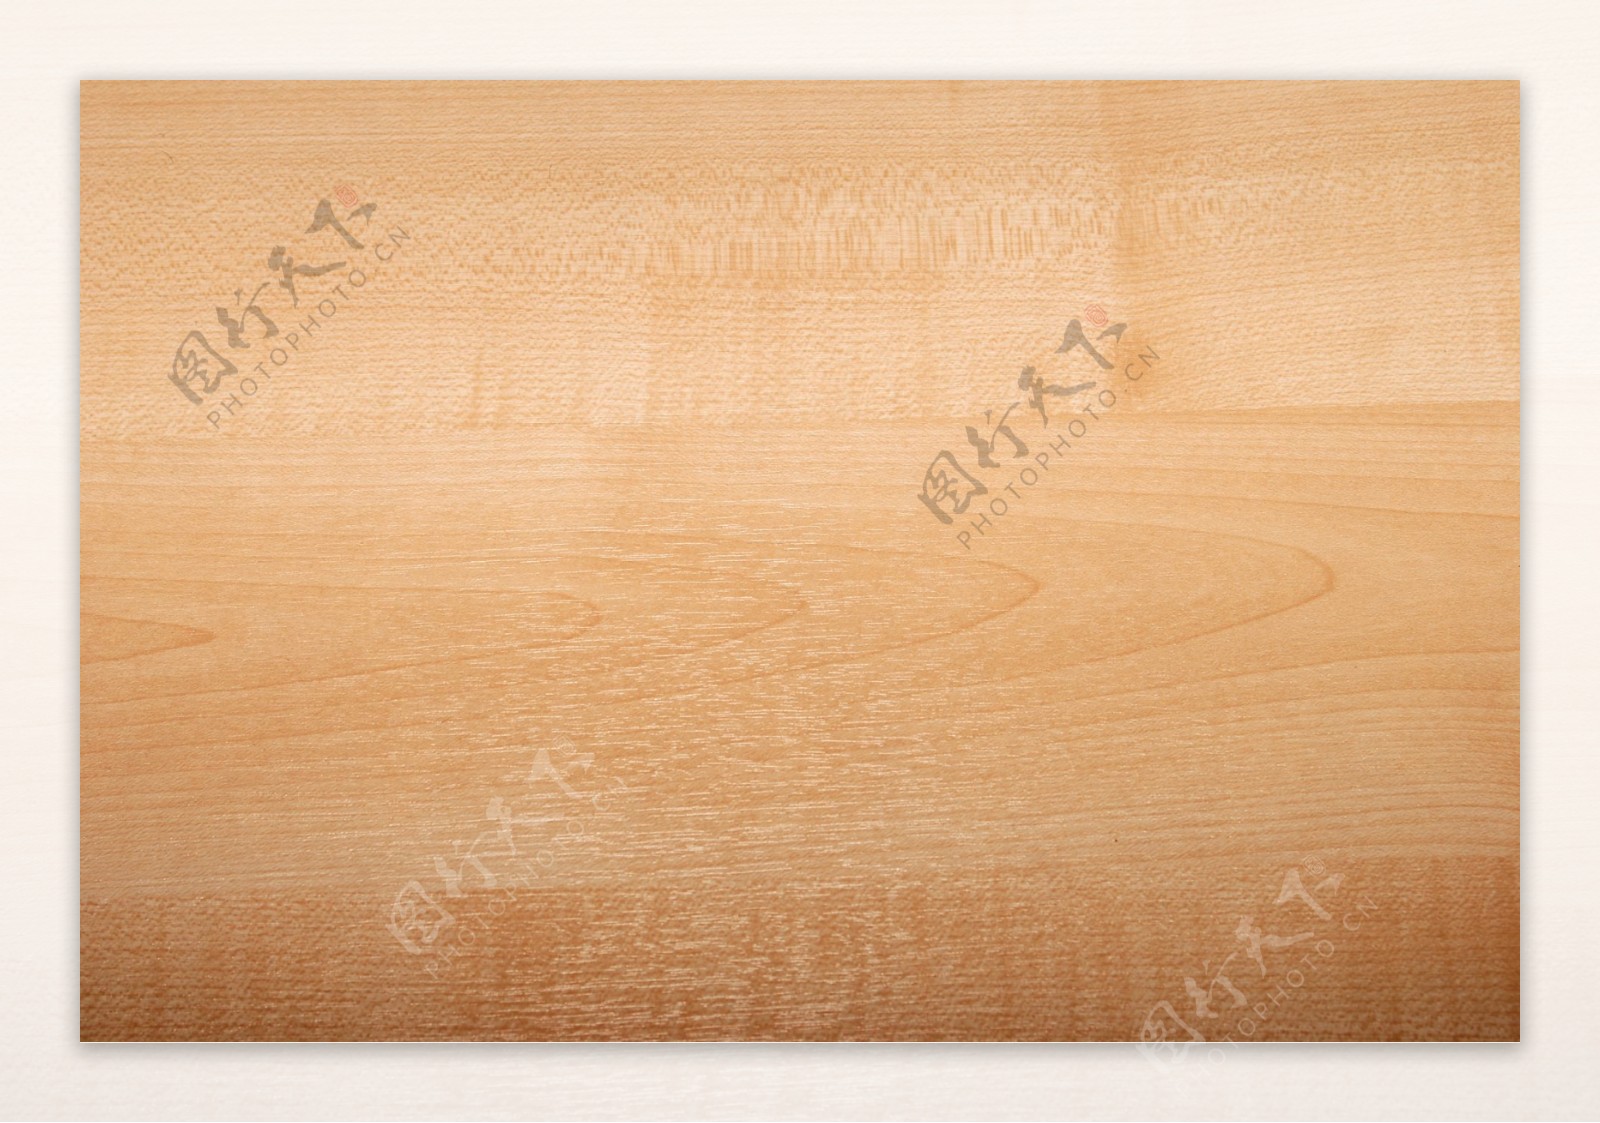 木材质木纹理木纹图片